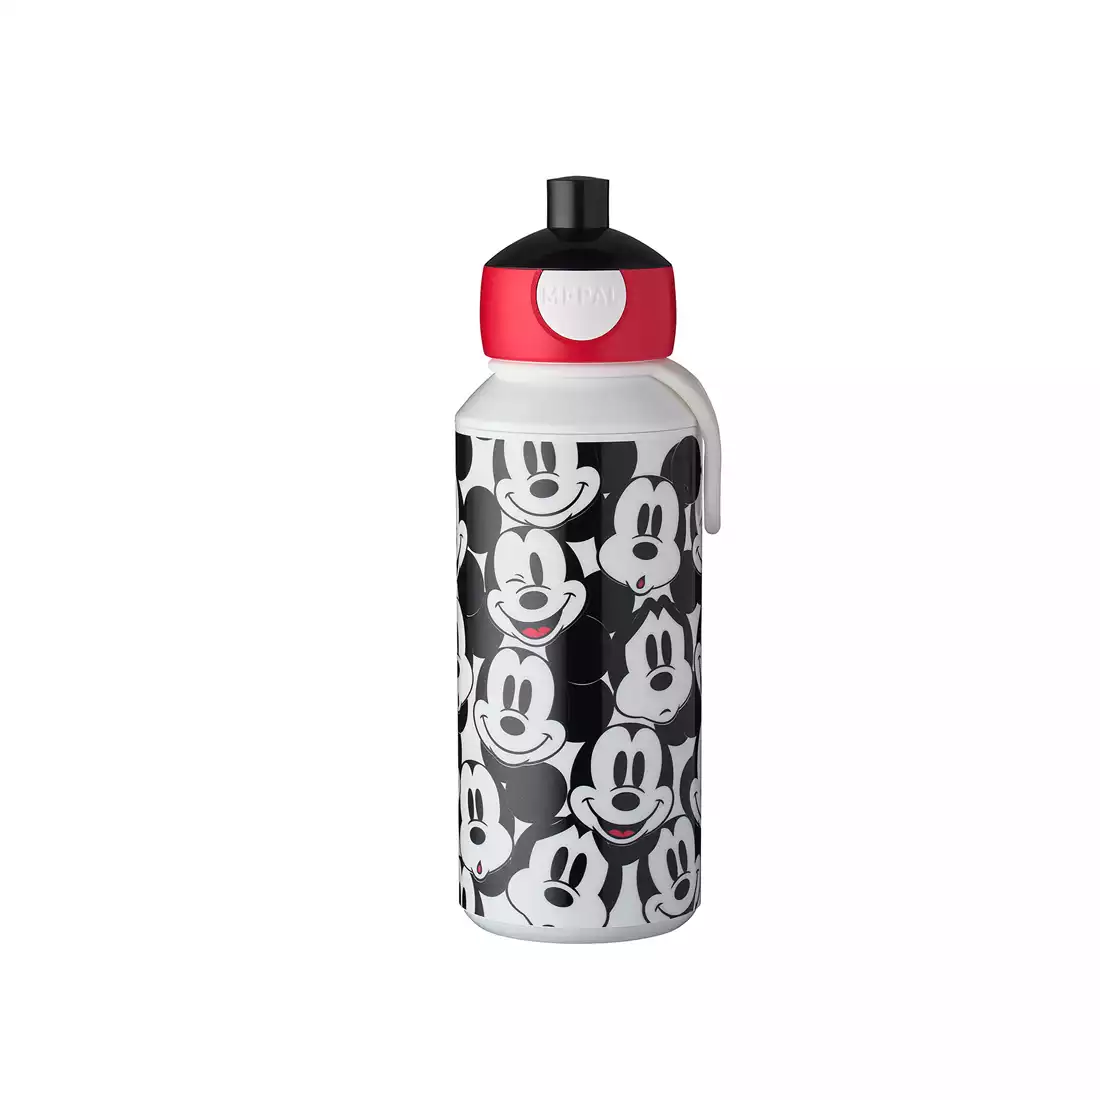 MEPAl CAMPUS POP-UP láhev na vodu pro děti 400 ml, mickey mouse